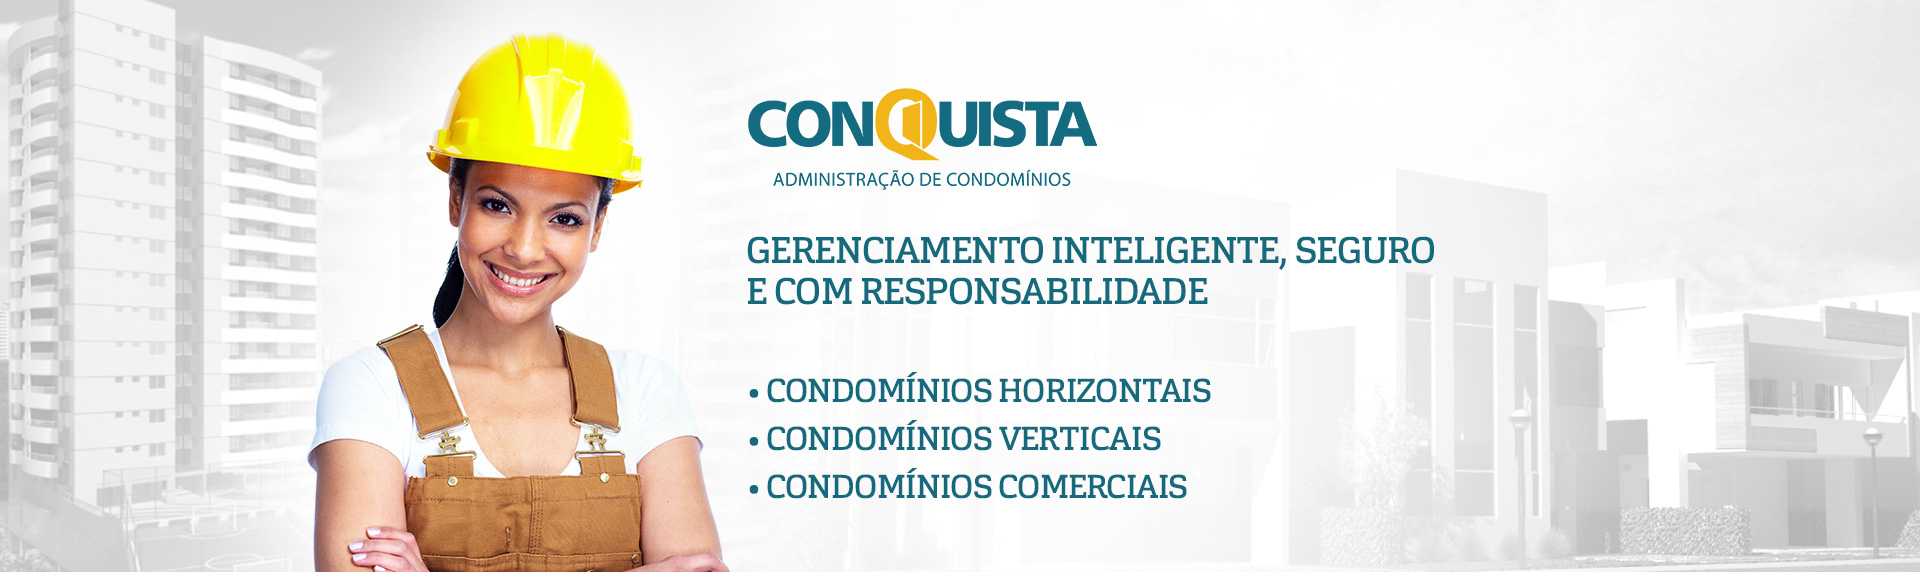 Conquista Condomínios | Administração de Condominios